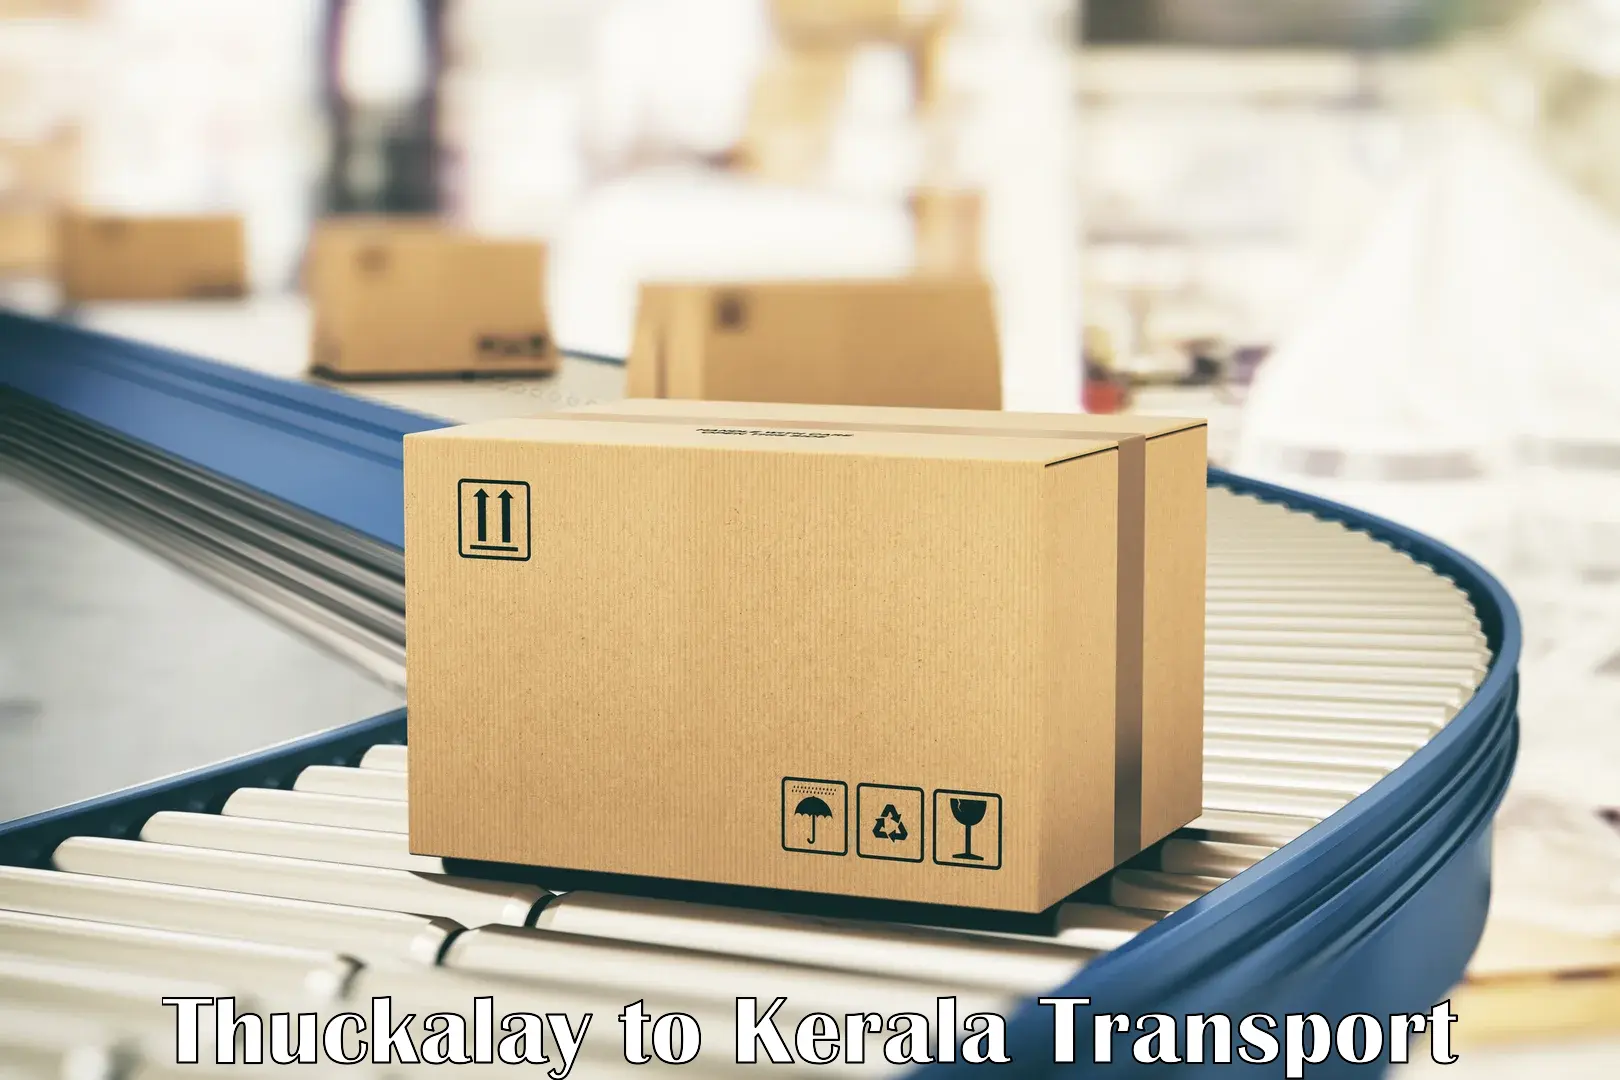 Nearby transport service Thuckalay to Kalpetta